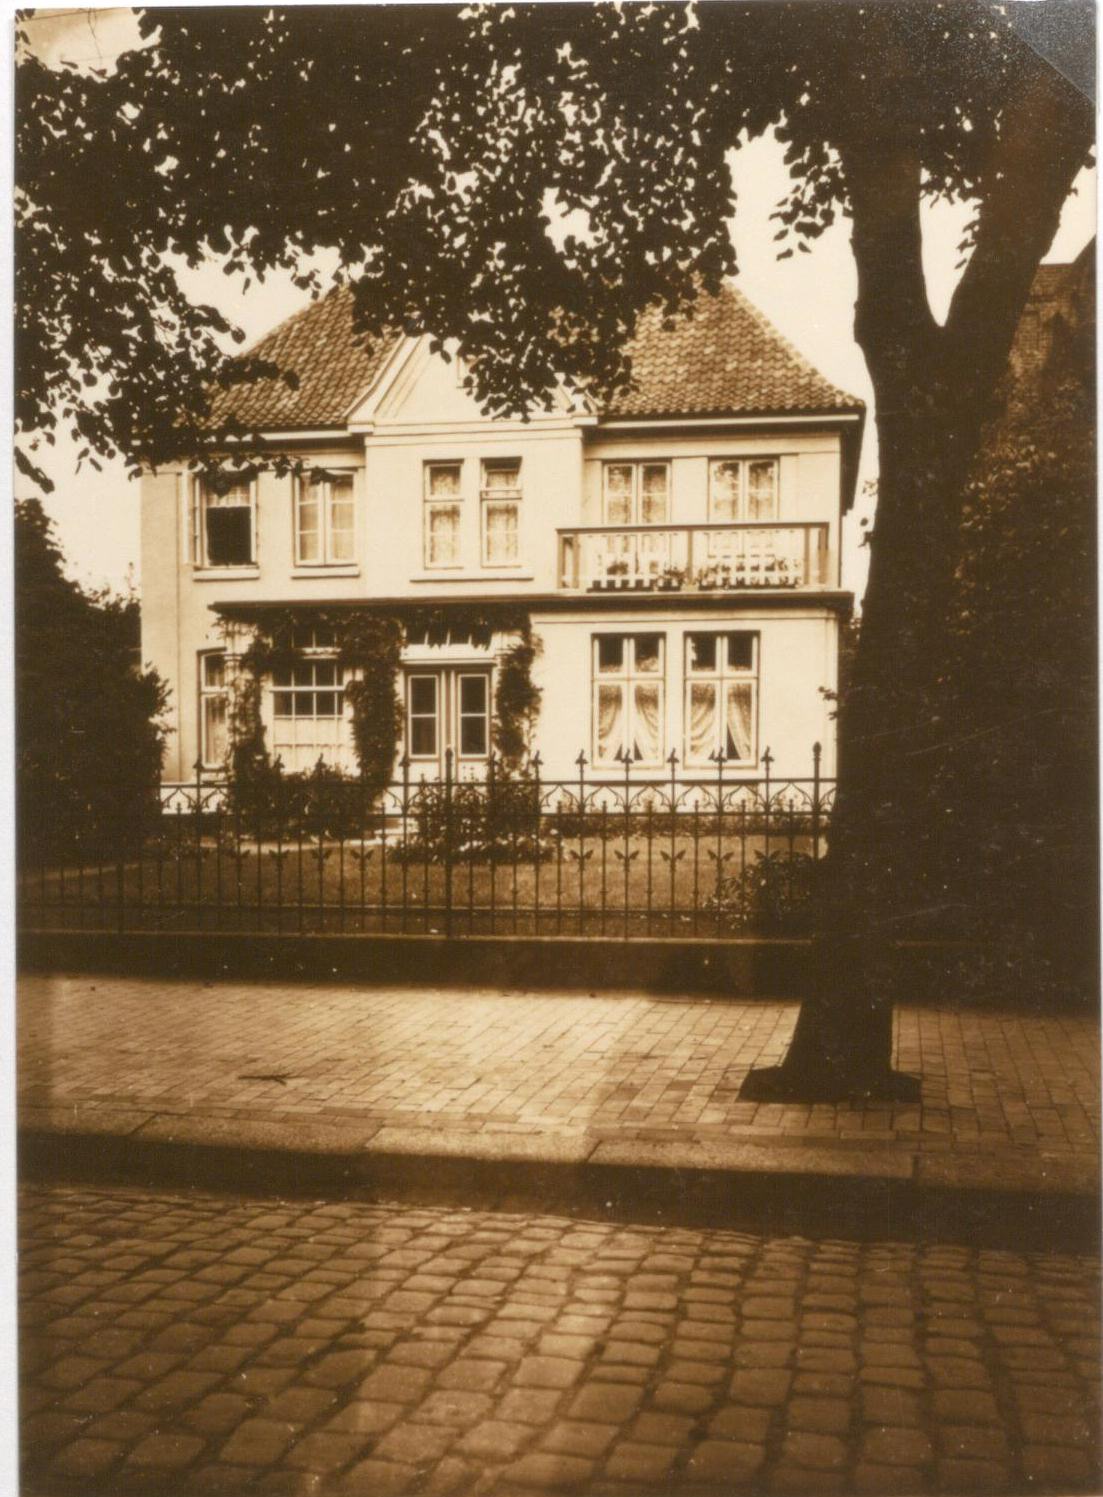 Das Staatliche Gesundheitsamt der Kreise Husum und Eiderstedt war während des Nationalsozialismus in der Asmussenstraße 11 in Husum ansässig. Das Foto des bis heute erhaltenen Gebäudes entstand nach dem Zweiten Weltkrieg.